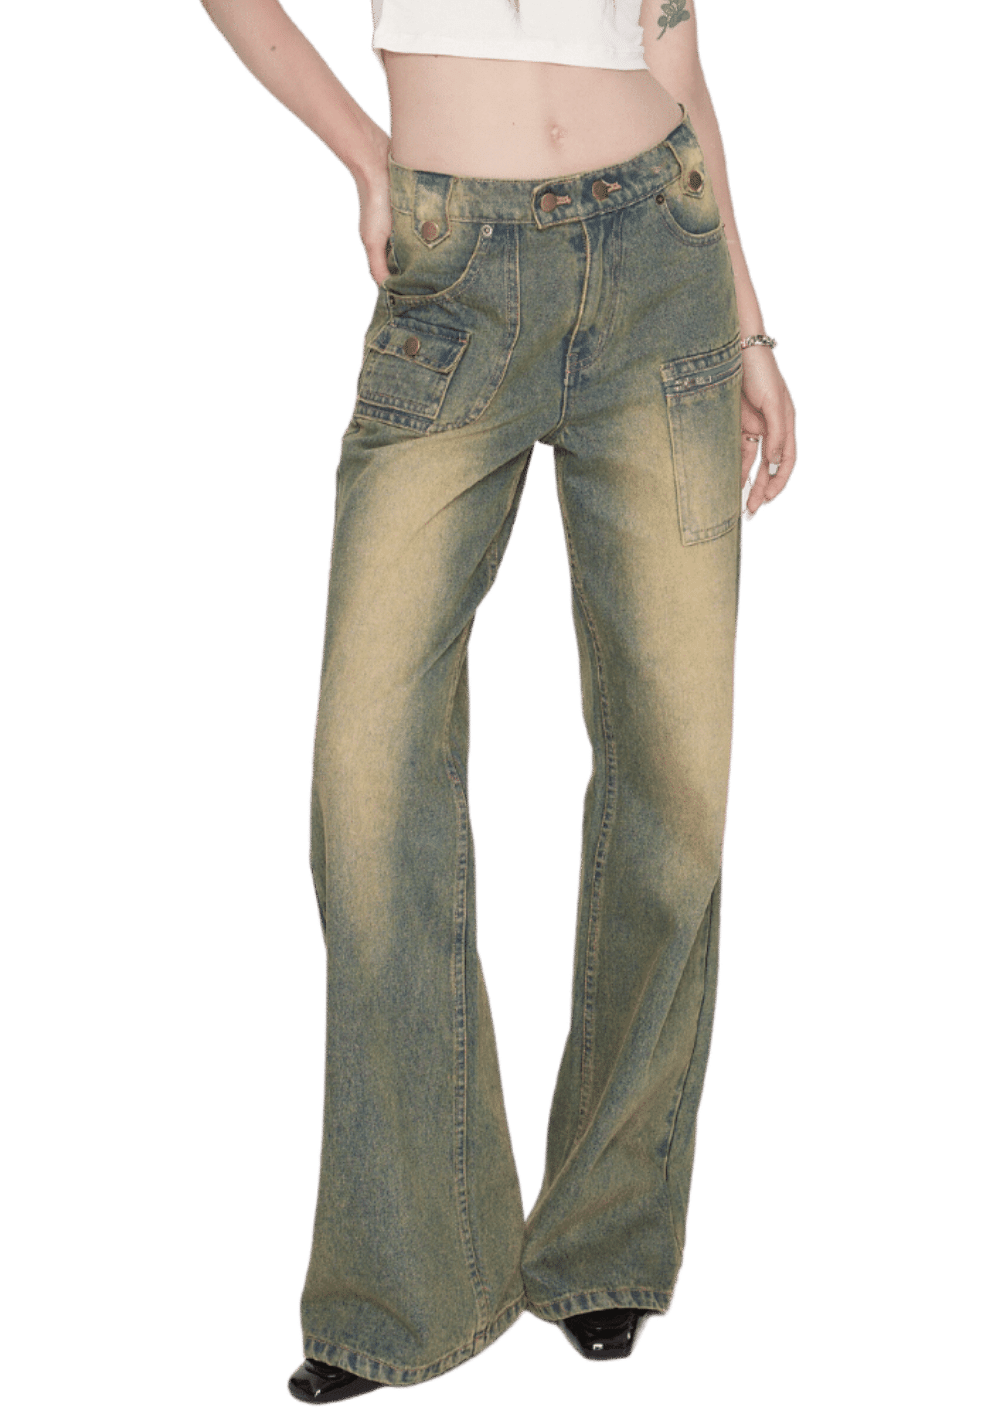 Washed Vintage Jeans - PSYLOS 1, Washed Vintage Jeans, Pants, LHC MODA, PSYLOS 1